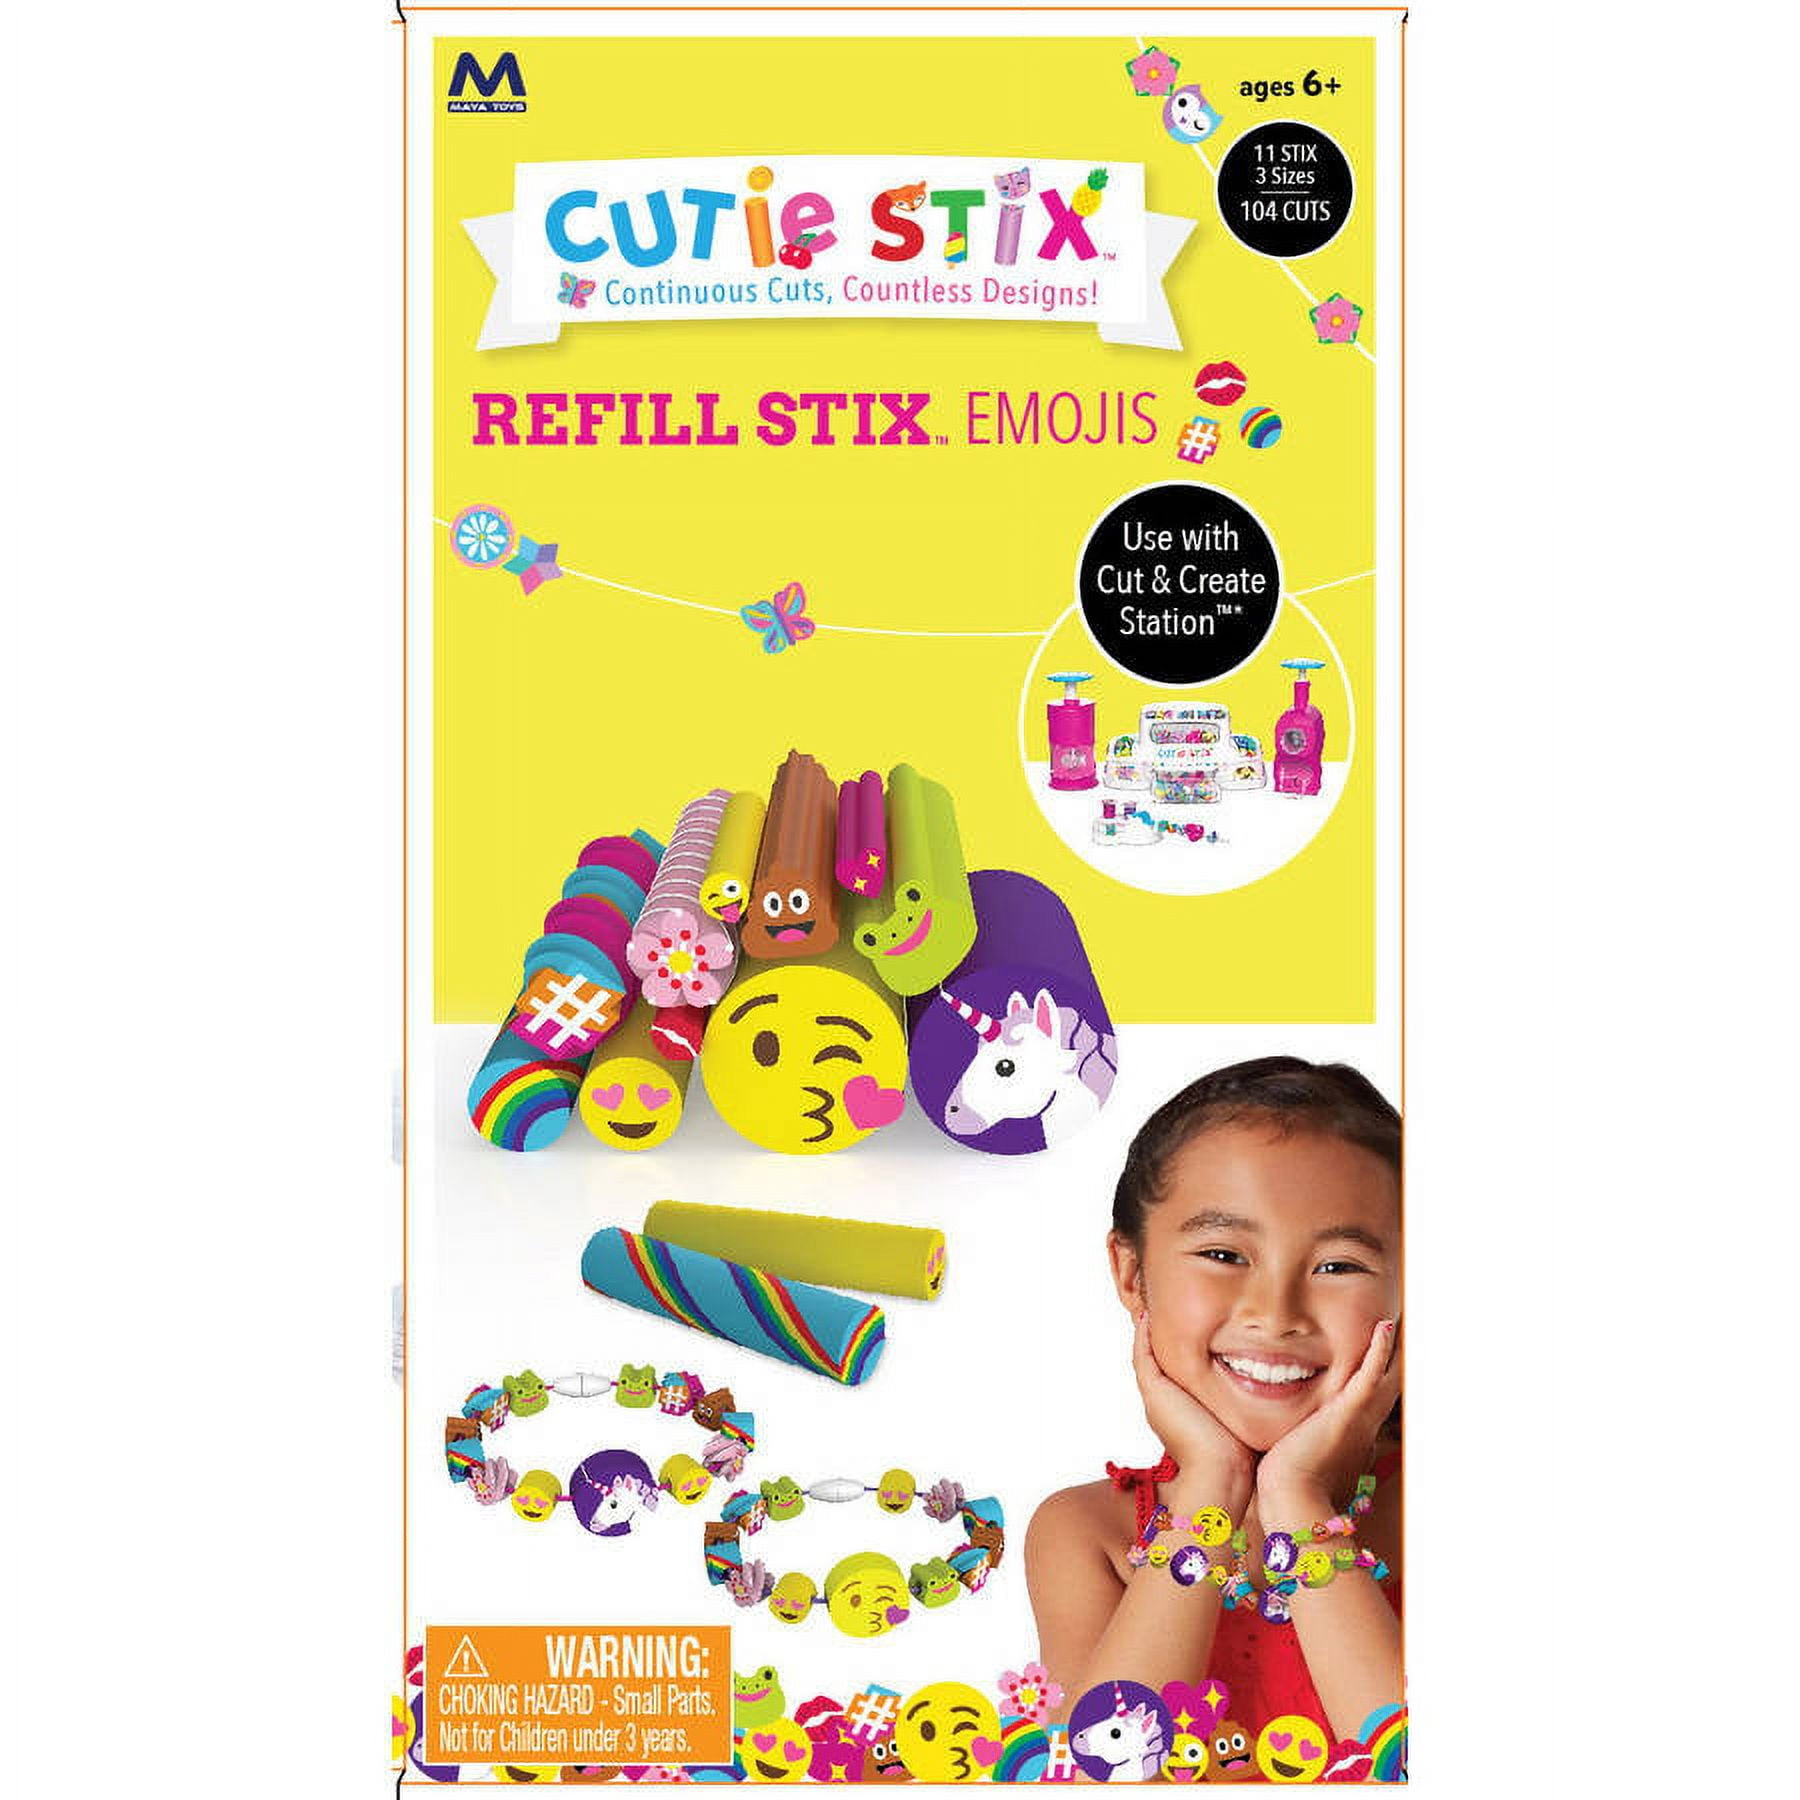 Cutie Stix Instructional Cut & Create Station